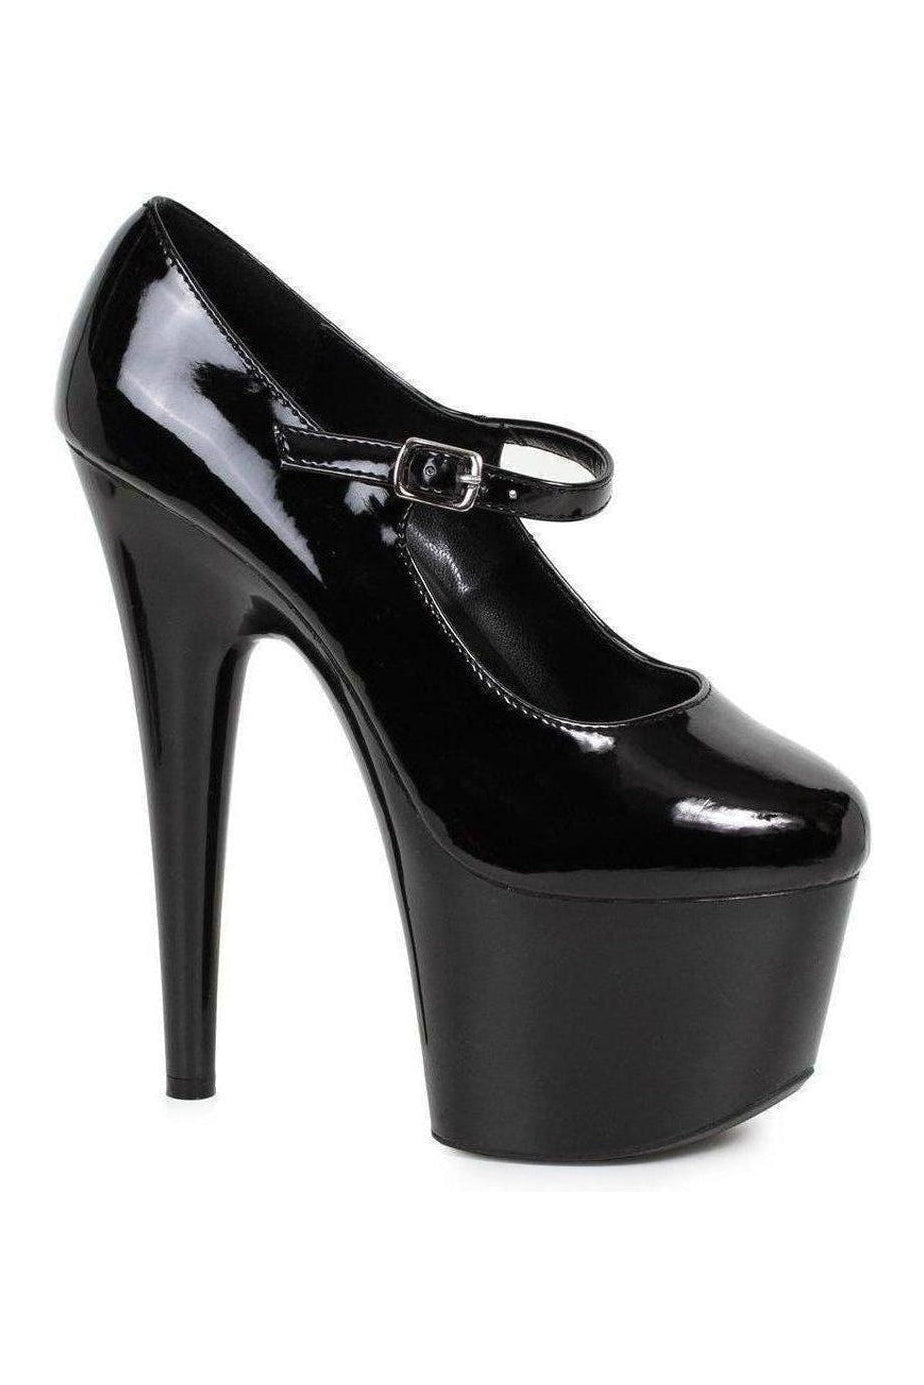 709-DOM Platform Pump | Black Patent-Ellie Shoes-SEXYSHOES.COM